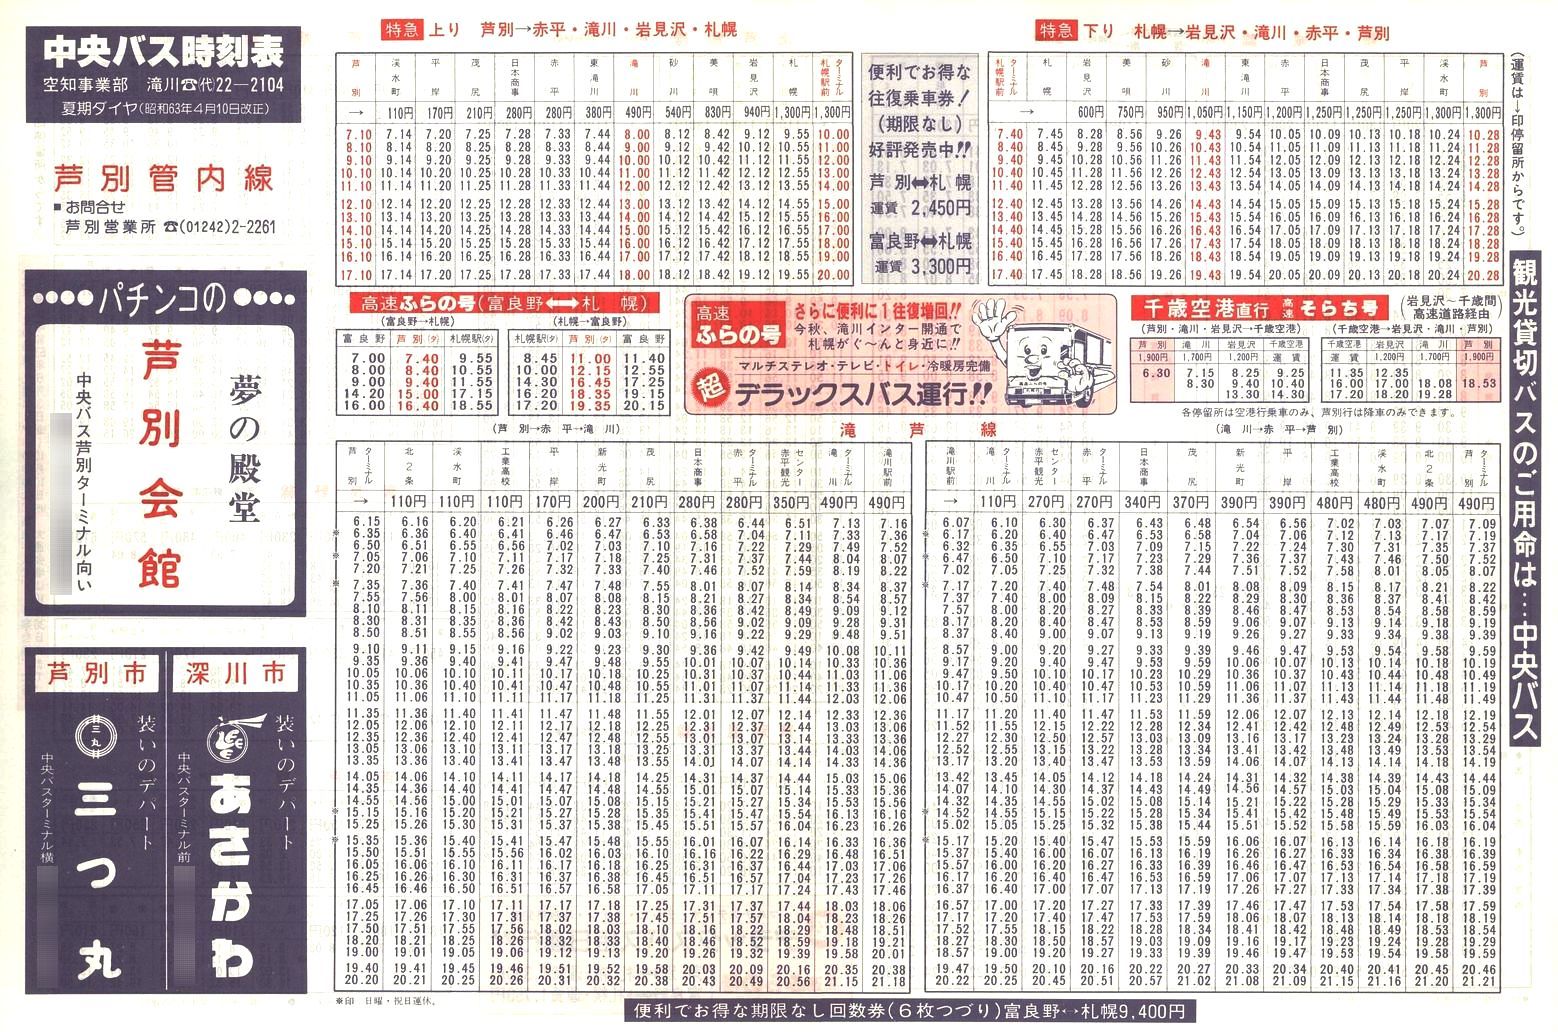 1988-04-10改正_北海道中央バス(空知)_芦別管内線時刻表表面